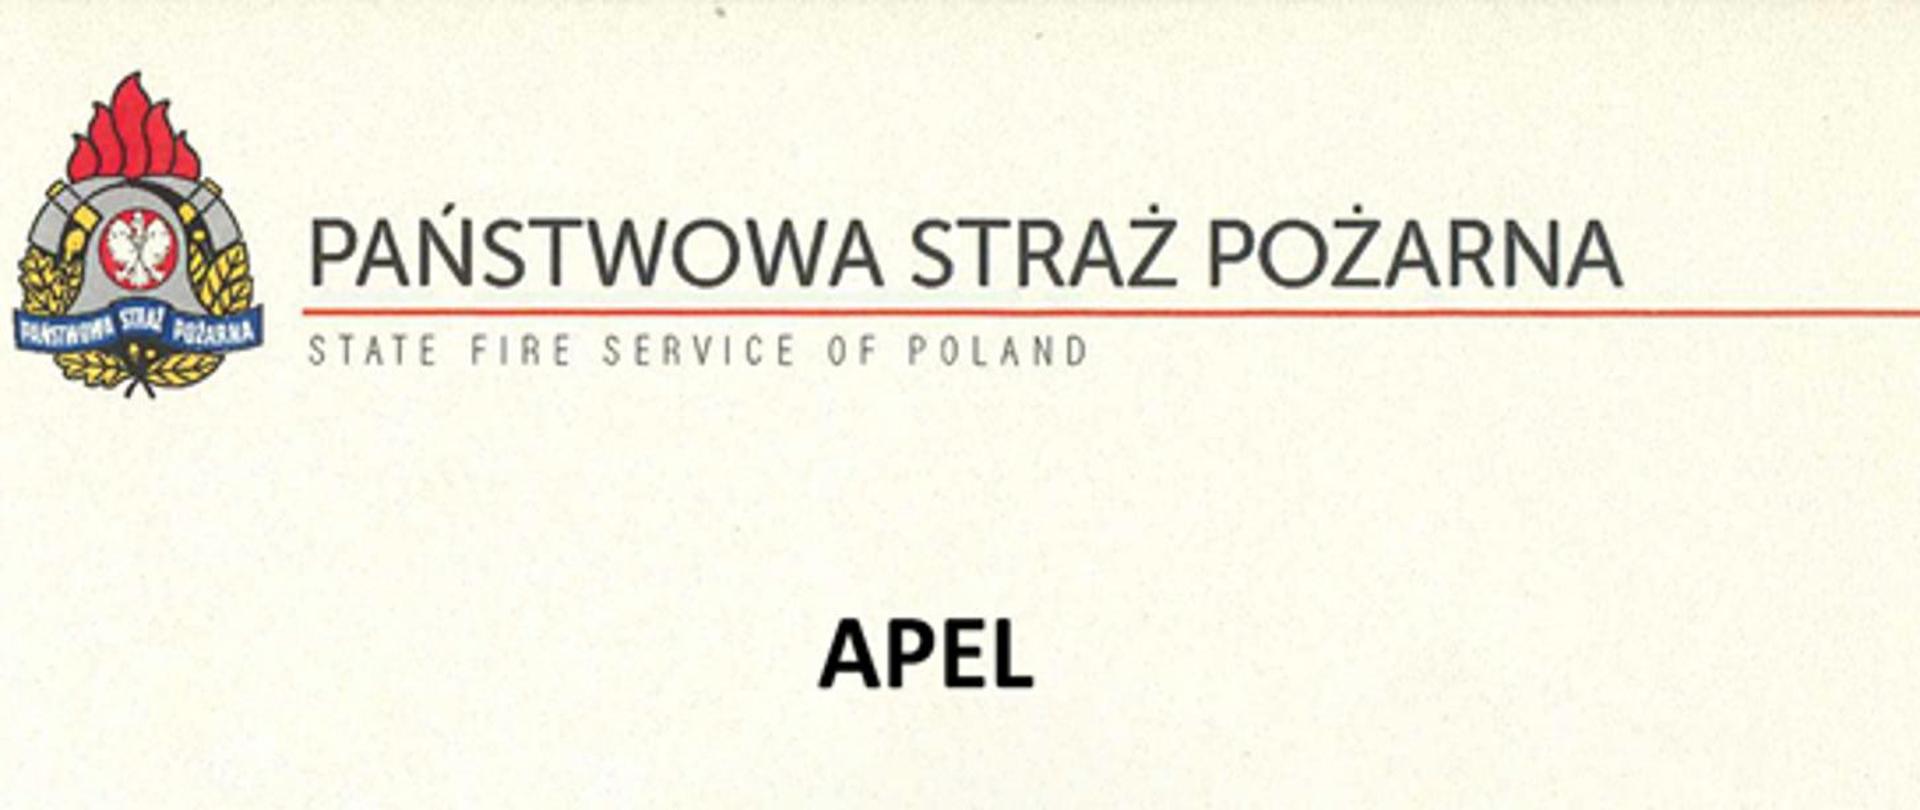 Zdjęcie przedstawia logo Państwowej Straży Pożarnej oraz napis "Państwowa Straż Pożarna State fire service of Poland" oddzielony czerwoną kreską. Pod spodem znajduje się napis "apel" który jest wyśrodkowany. Wszystko jest na białym tle.